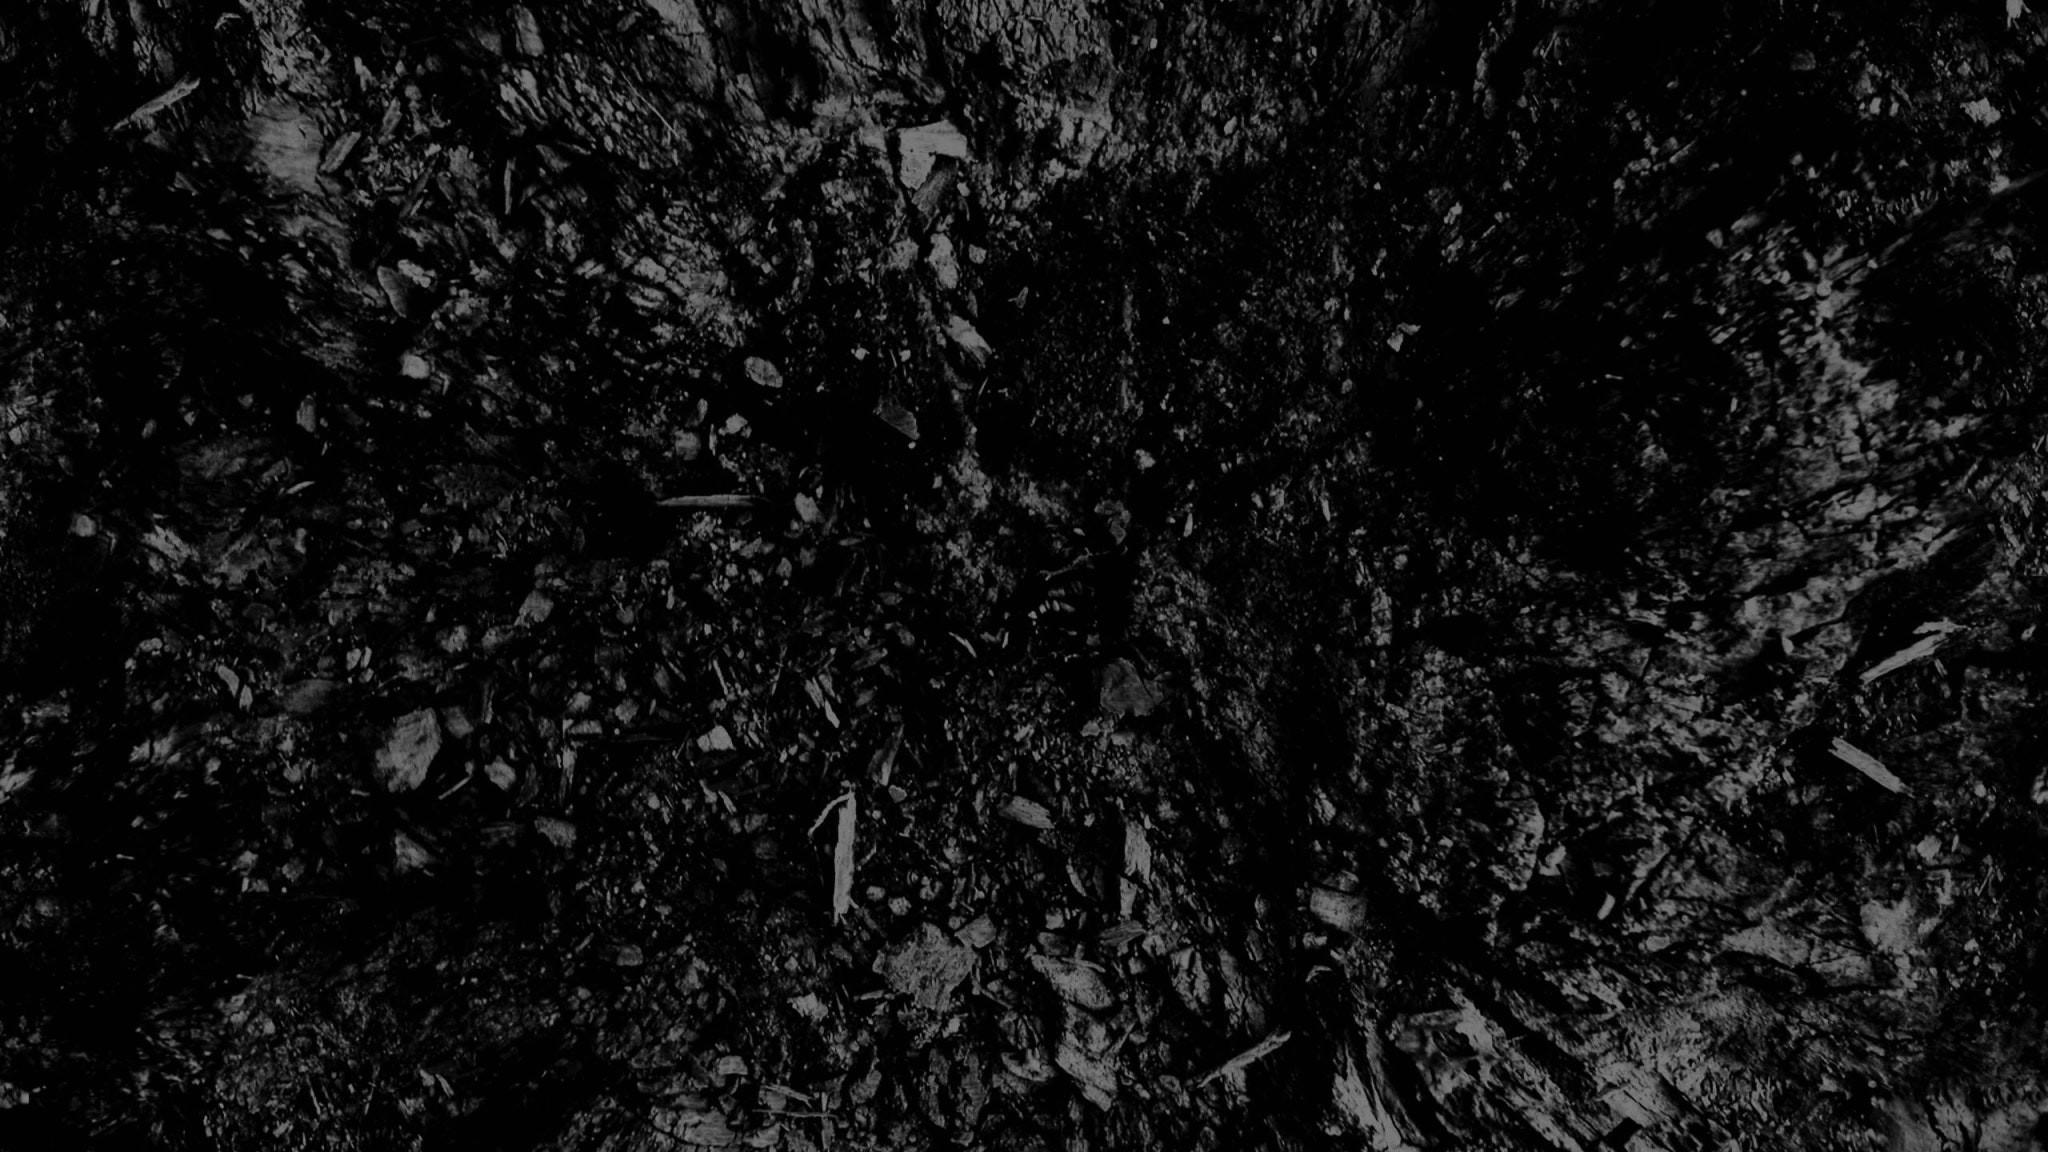 2048x1152 2048X1152 Bilder Mit HD Desktop Wallpapers  Free Backgrounds 7 Und  Dark Black And White Abstract Background 76353